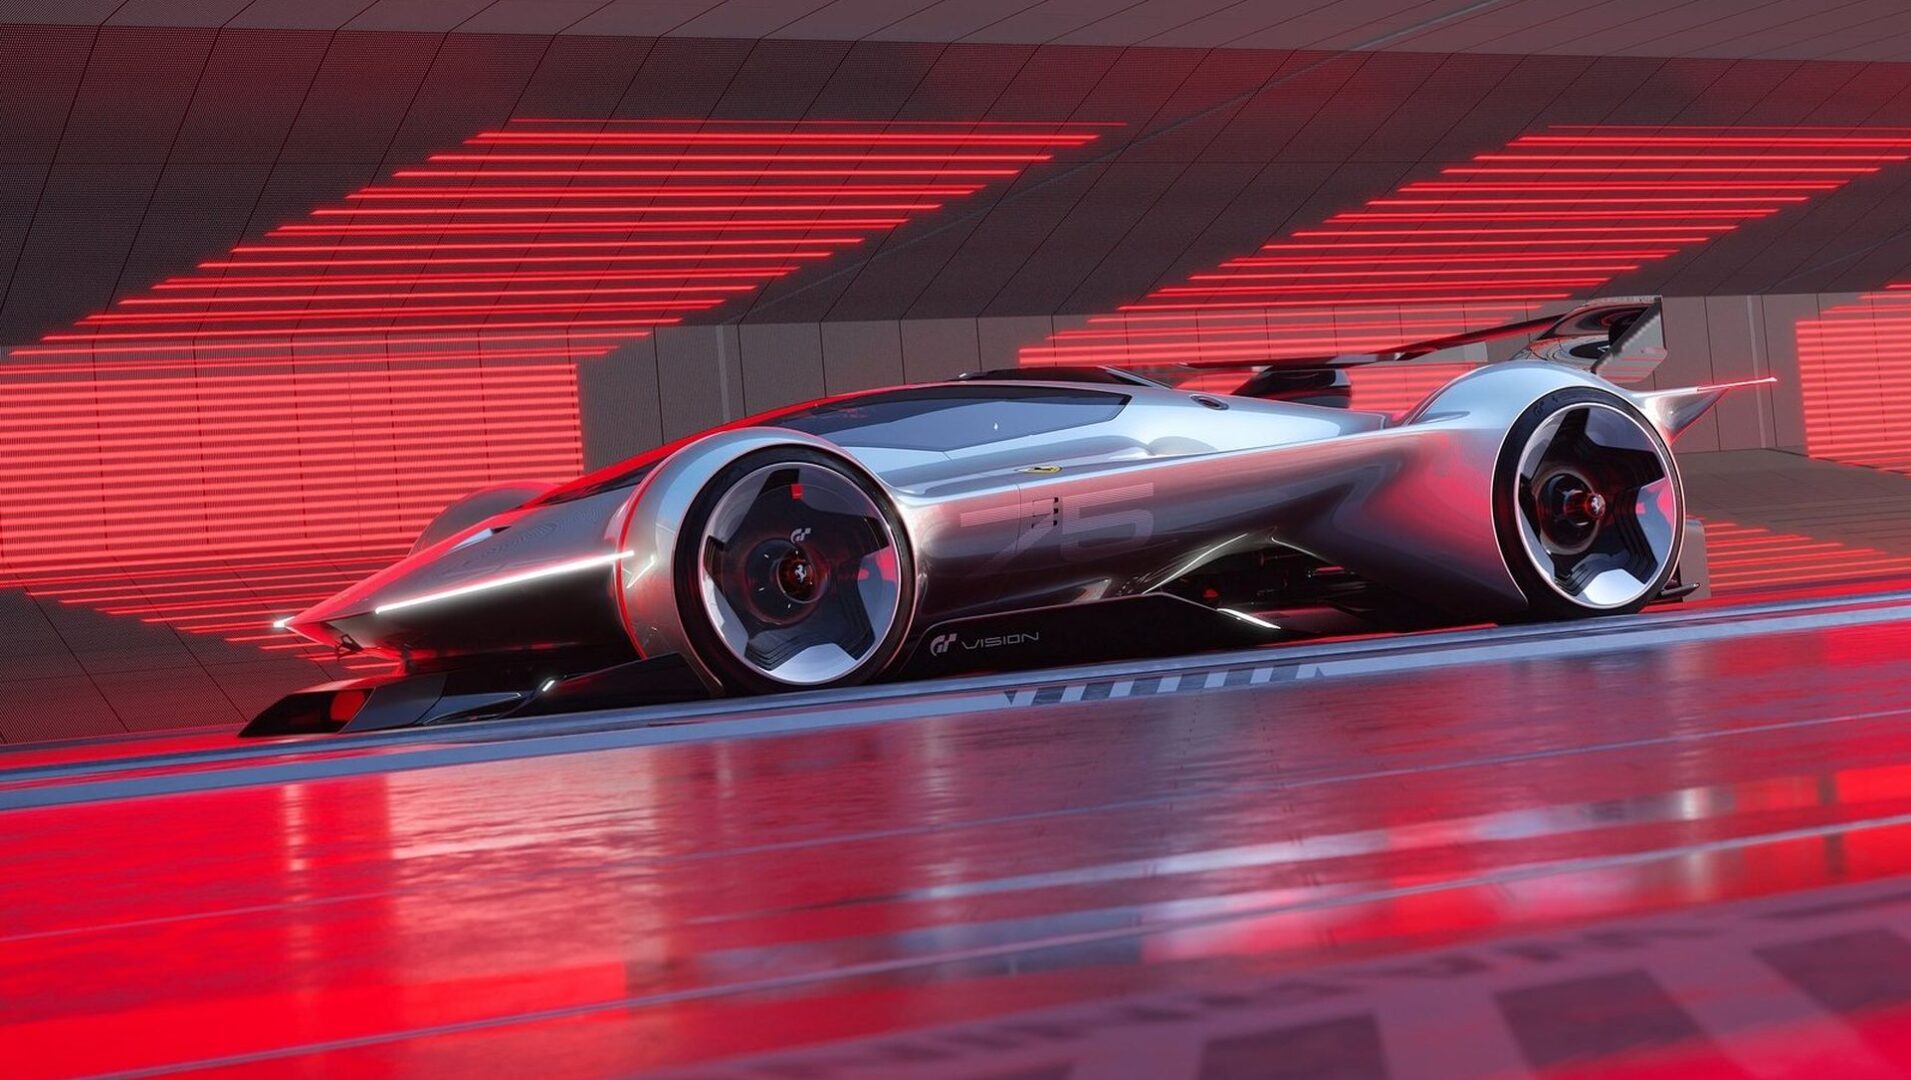 Prvi virtualni Ferrari: Vision Gran Turismo Concept stiže u Gran Turismo 7